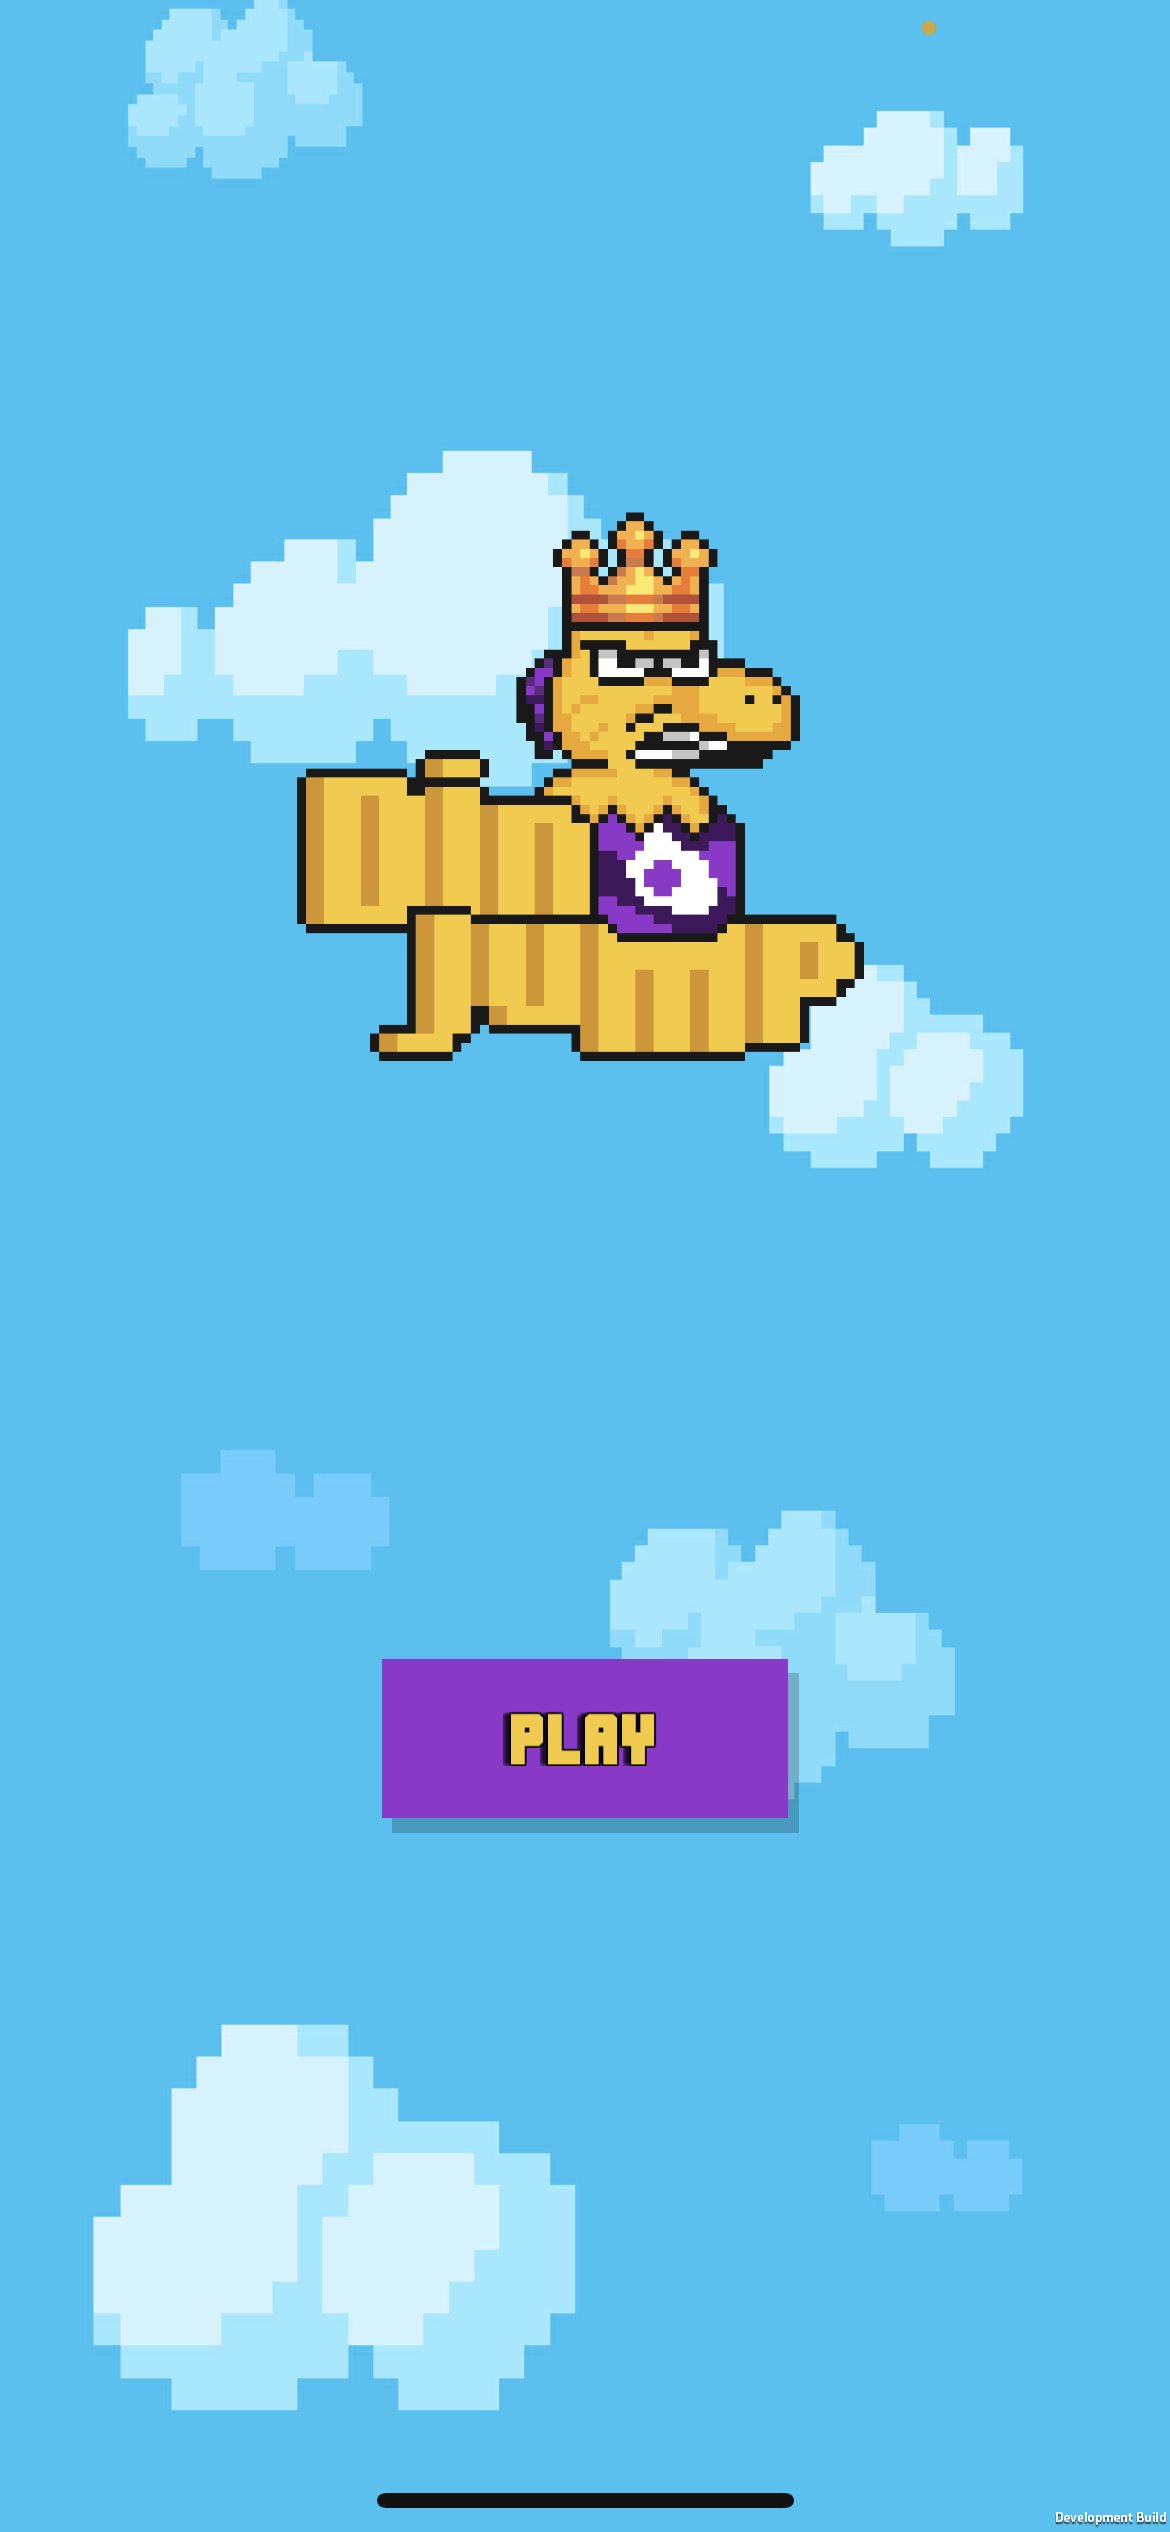 Dino Jump - iOS game